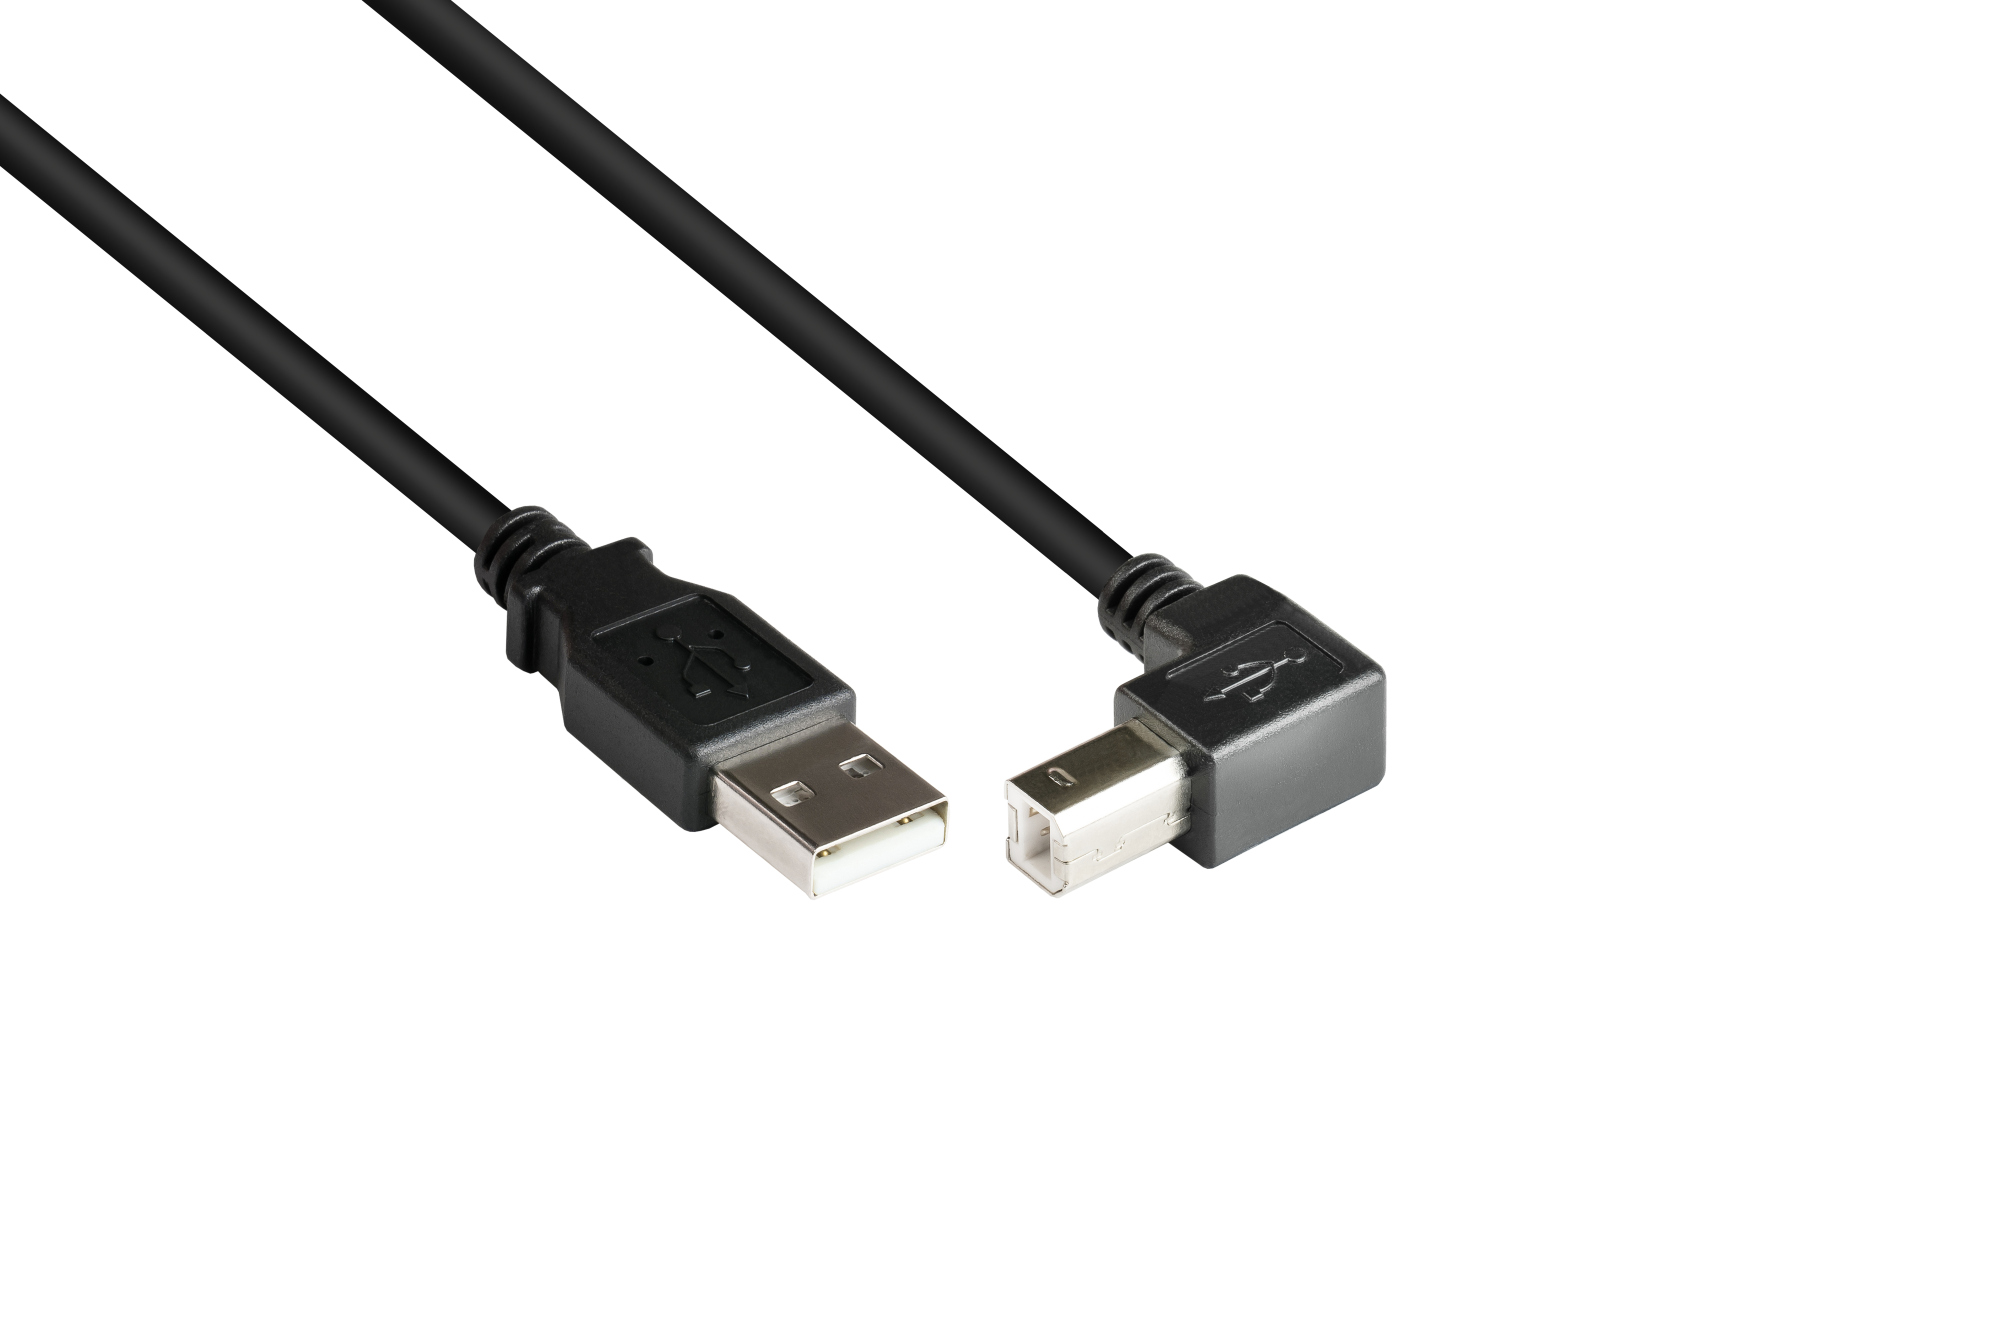 Anschlusskabel USB 2.0 Stecker A an Stecker B nach unten gewinkelt, 5m, Good Connections®